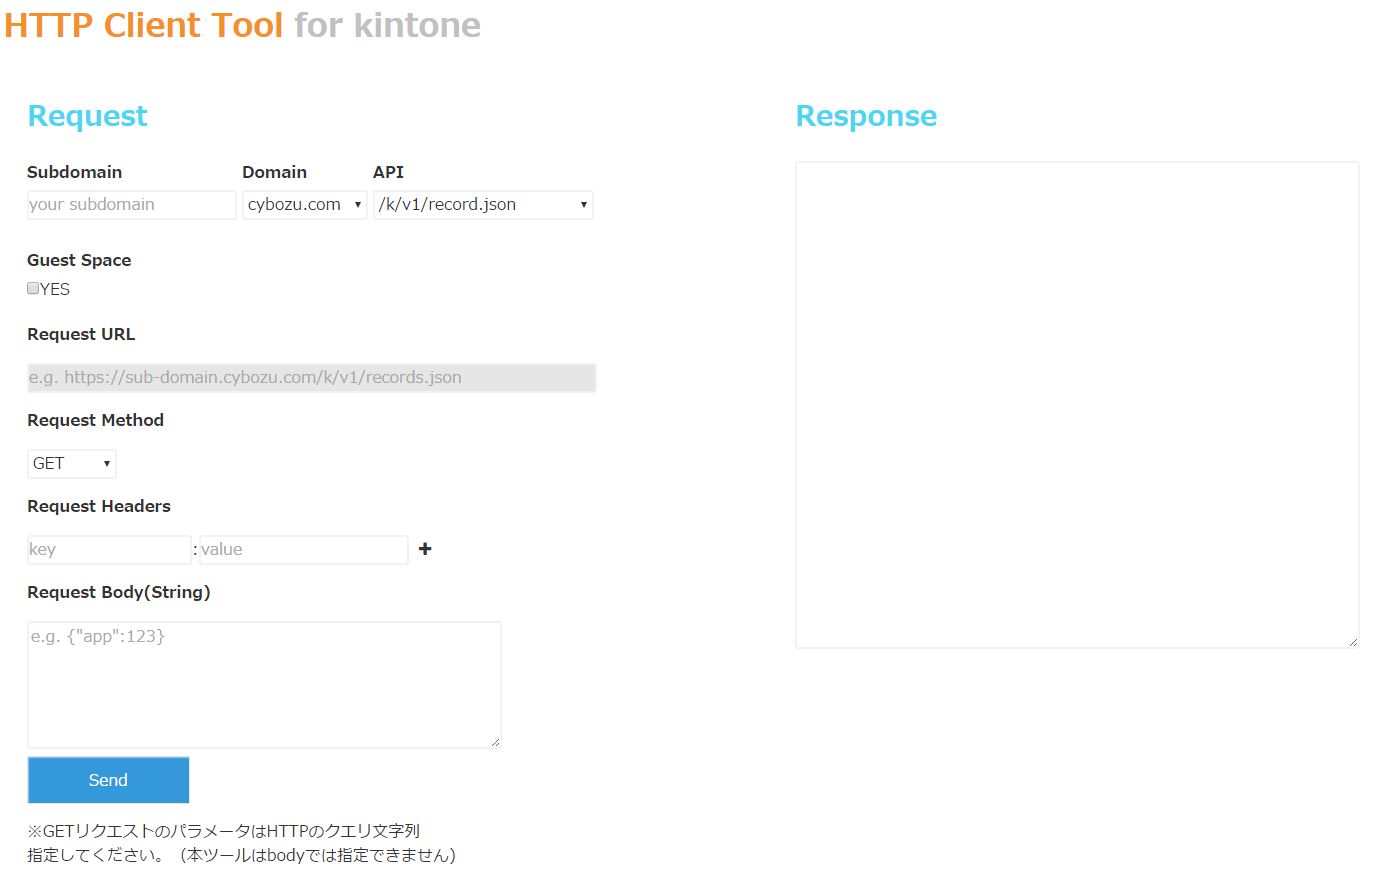 スクリーンショット：HTTP Client Tool for kintone の画面